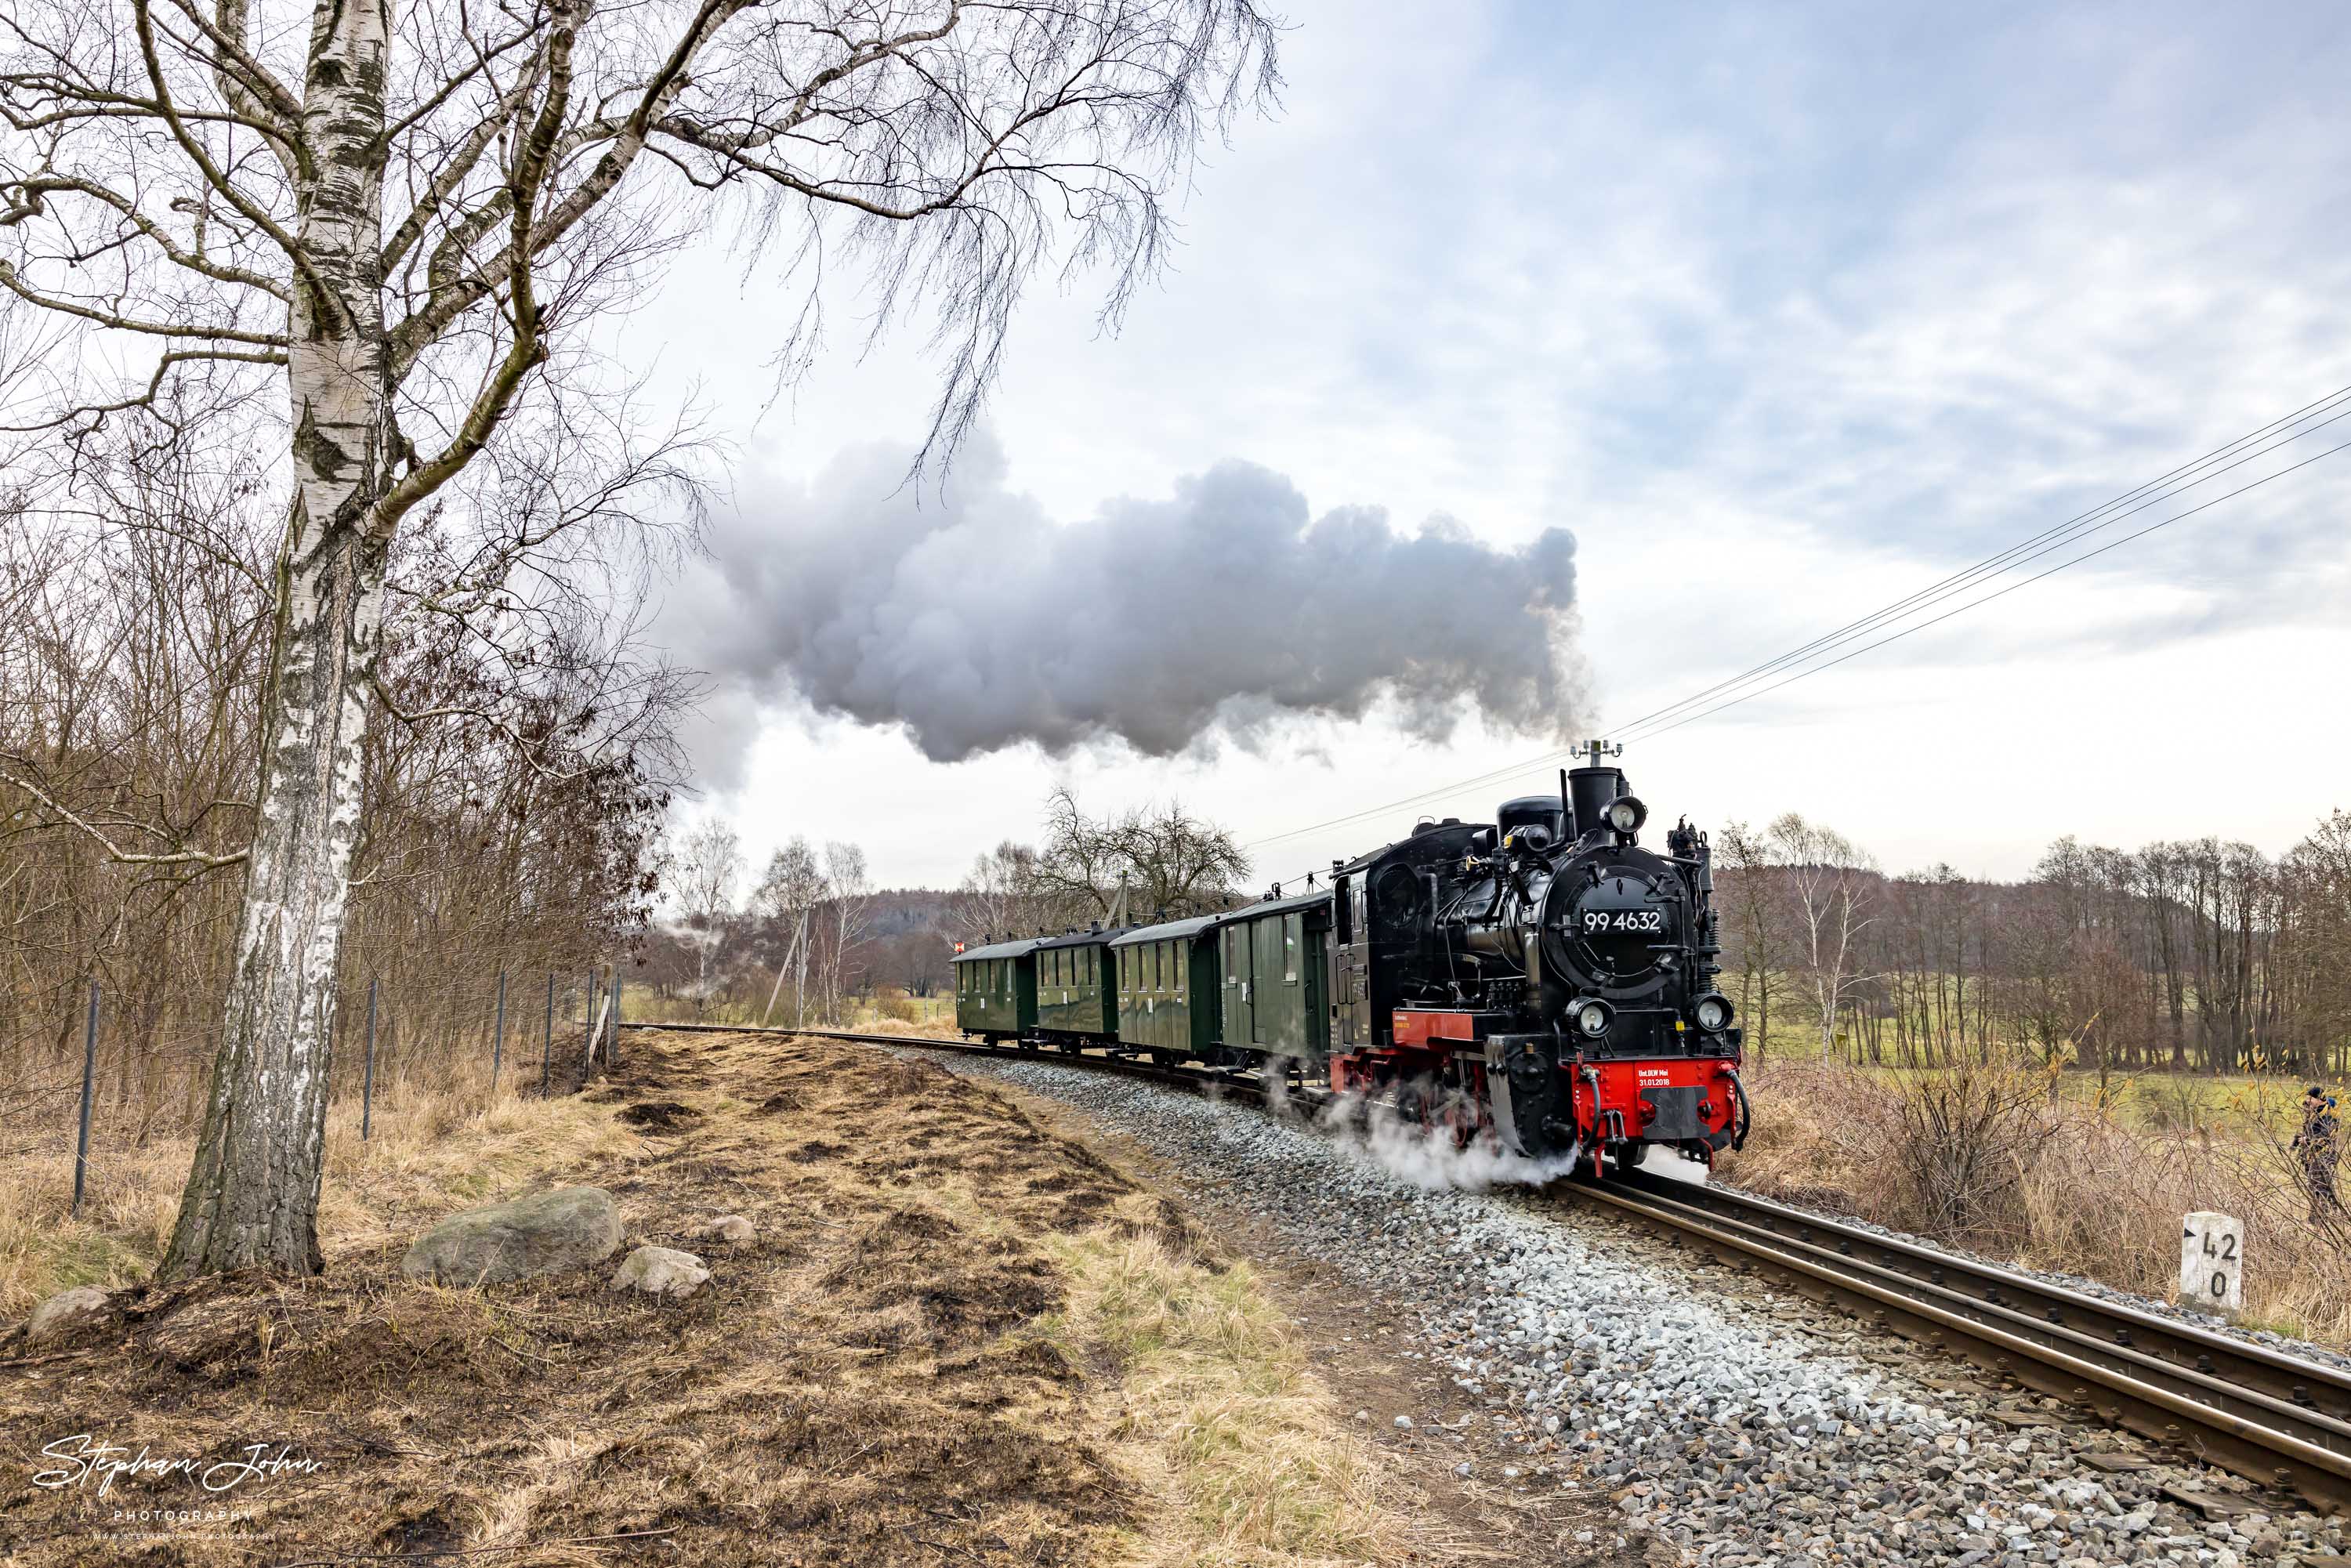 Zug P 222 mit Lok 99 4632 zwischen Serams und Seelvitz